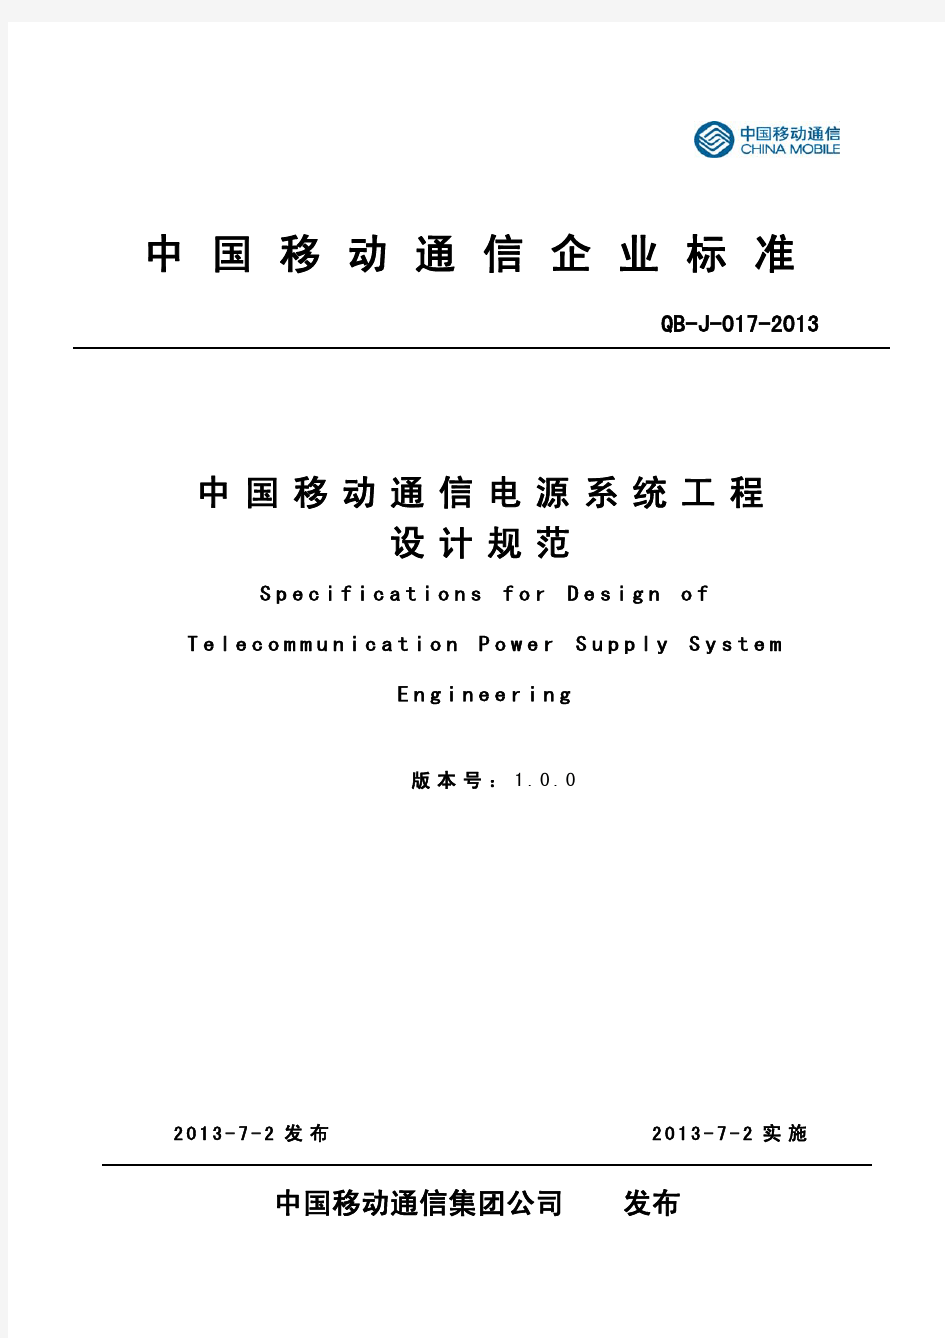 《中国移动 通信电源系统 工程设计规范 》(QB-J -017-2013)V1  0 0-修正版